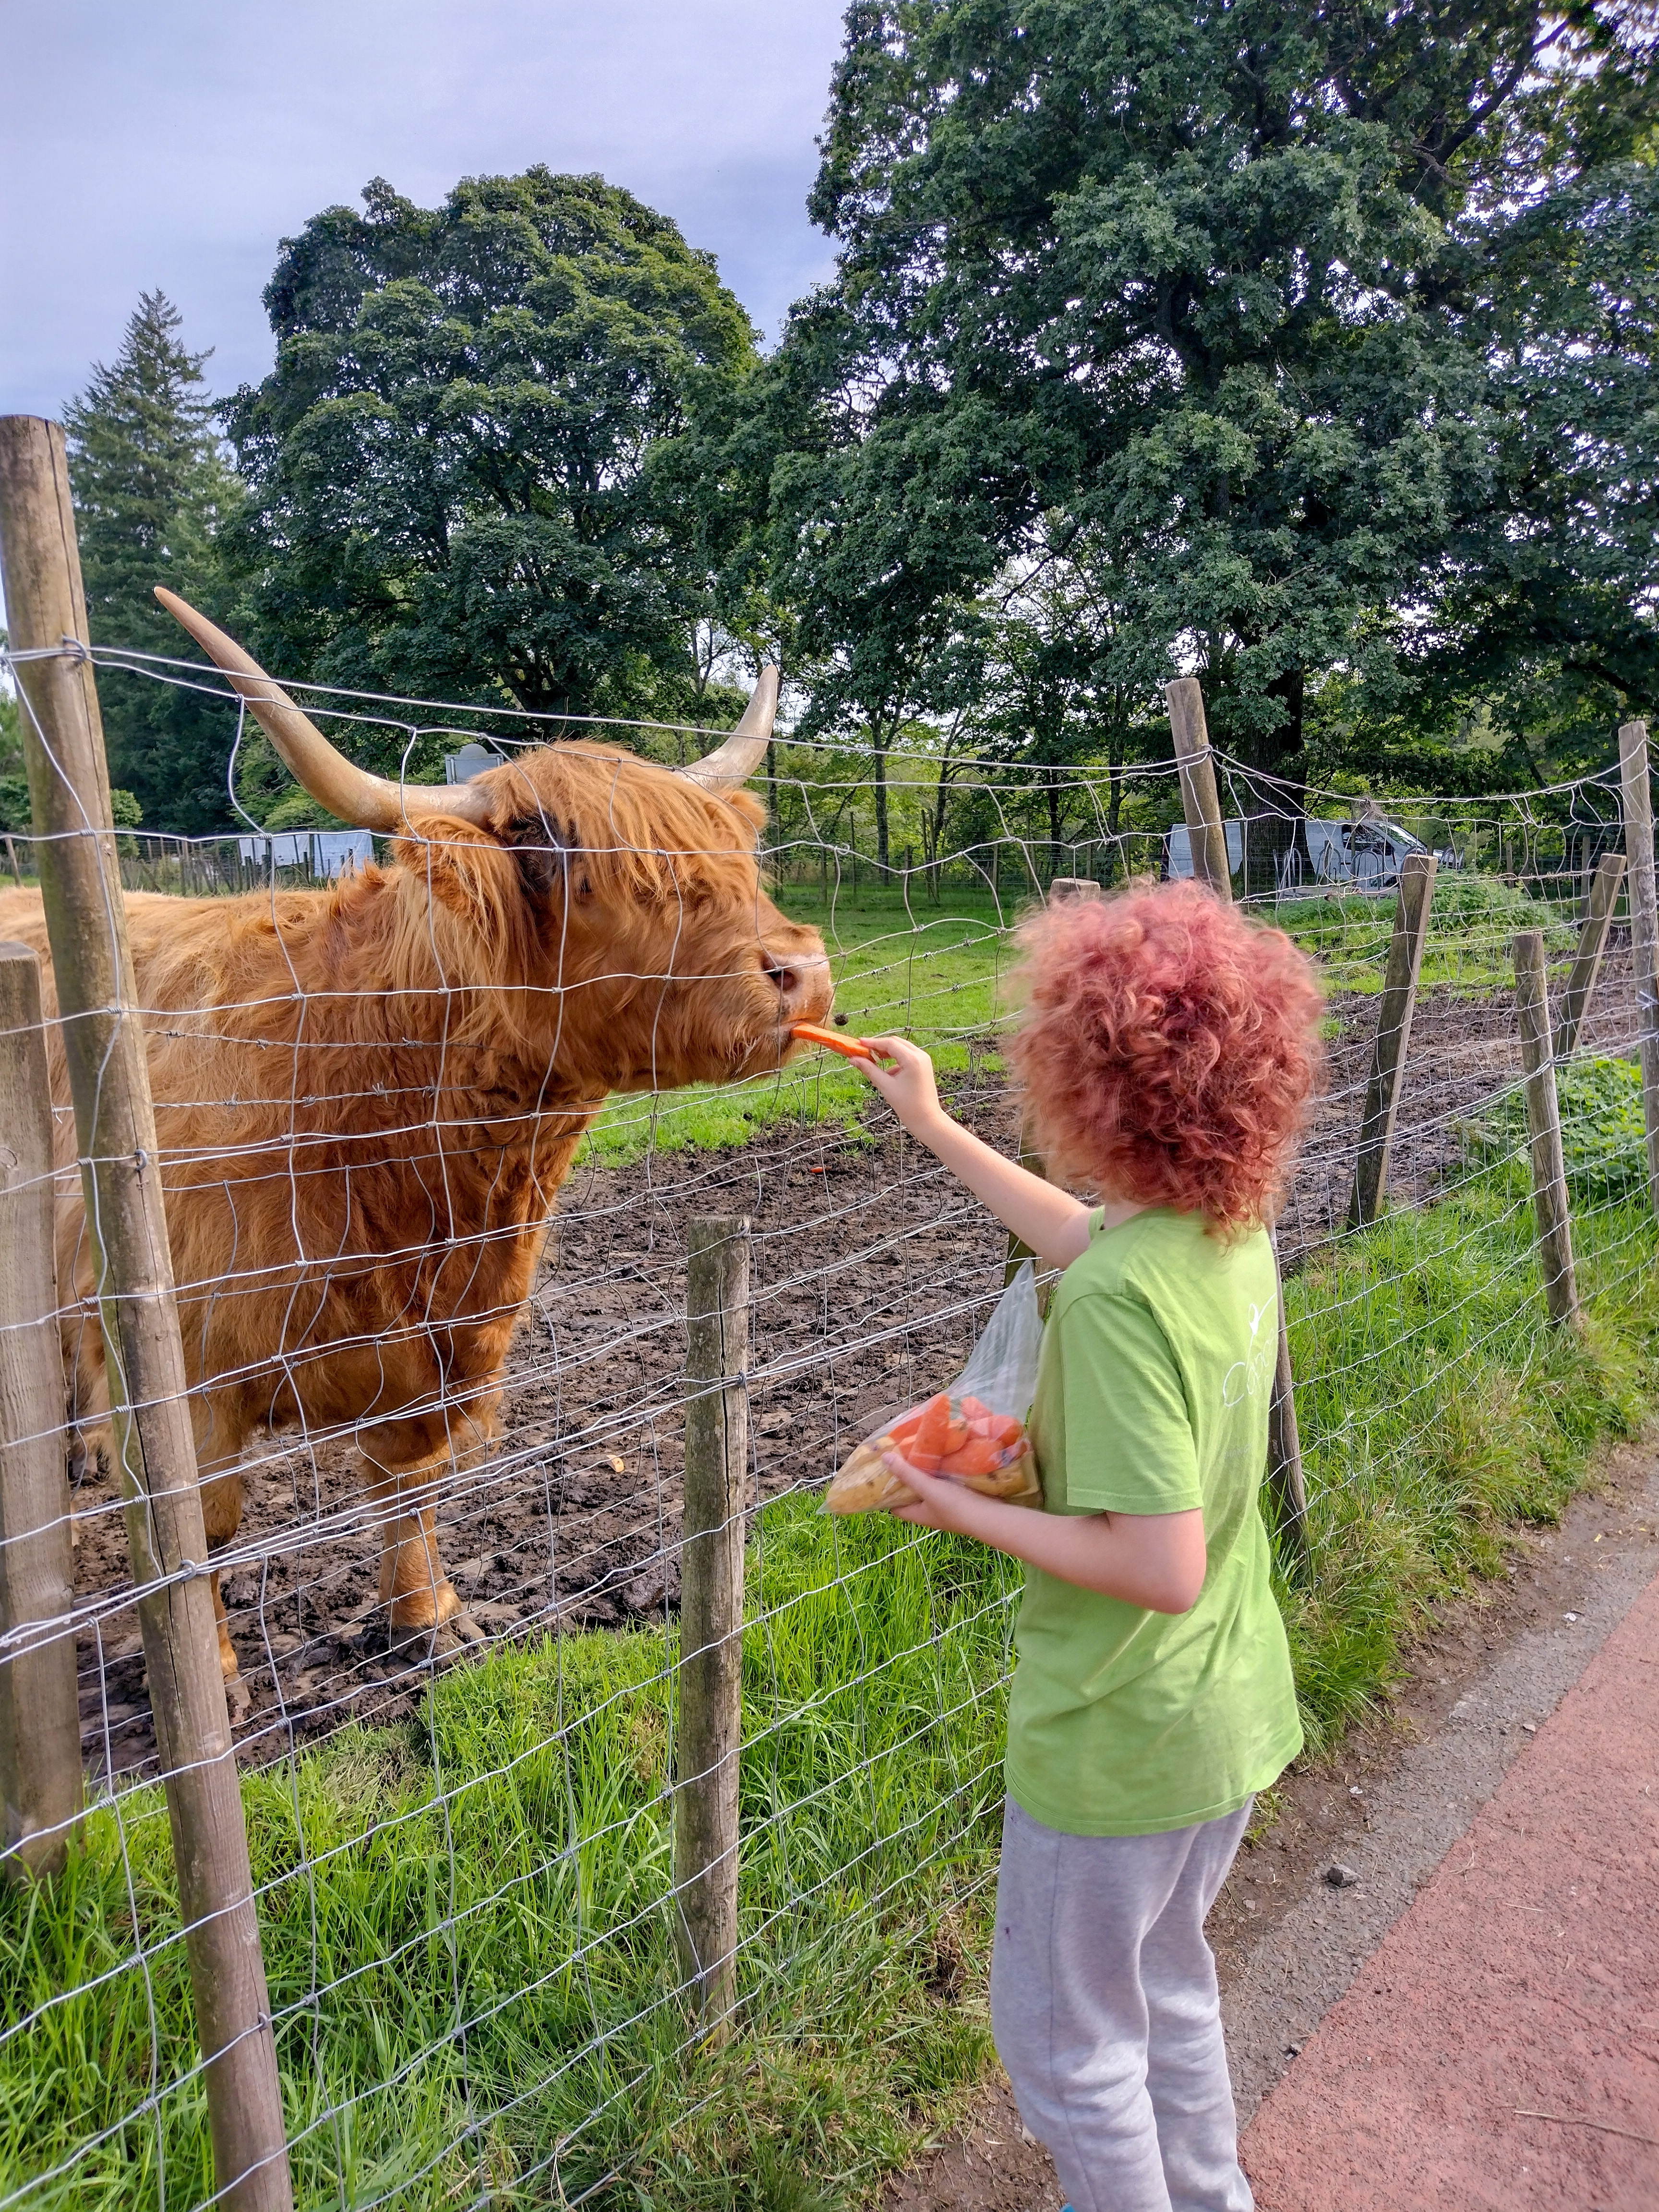 Child feeding highland cow in Scotland